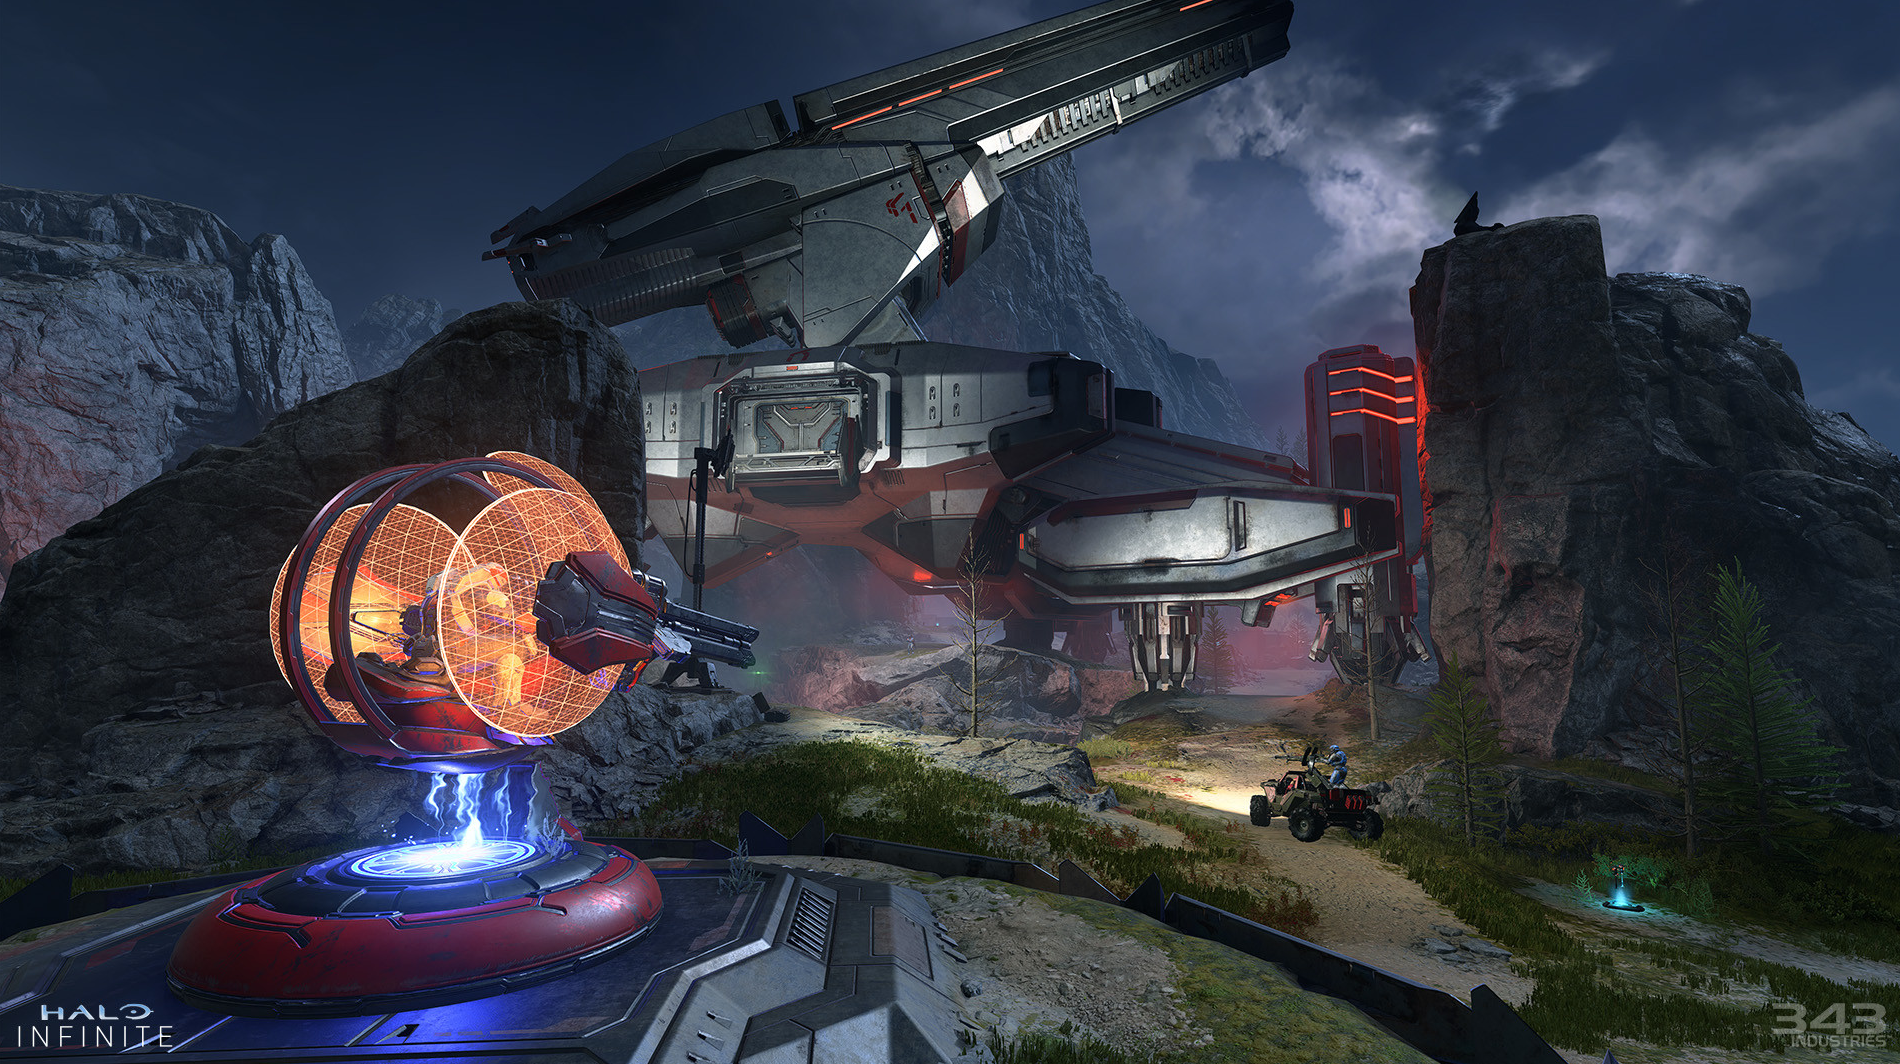 ผู้พัฒนา Halo Infinite “เตรียมพร้อมและมุ่งมั่น” ในการต่อสู้กับปัญหาการโกงที่เกิดขึ้นในเกม